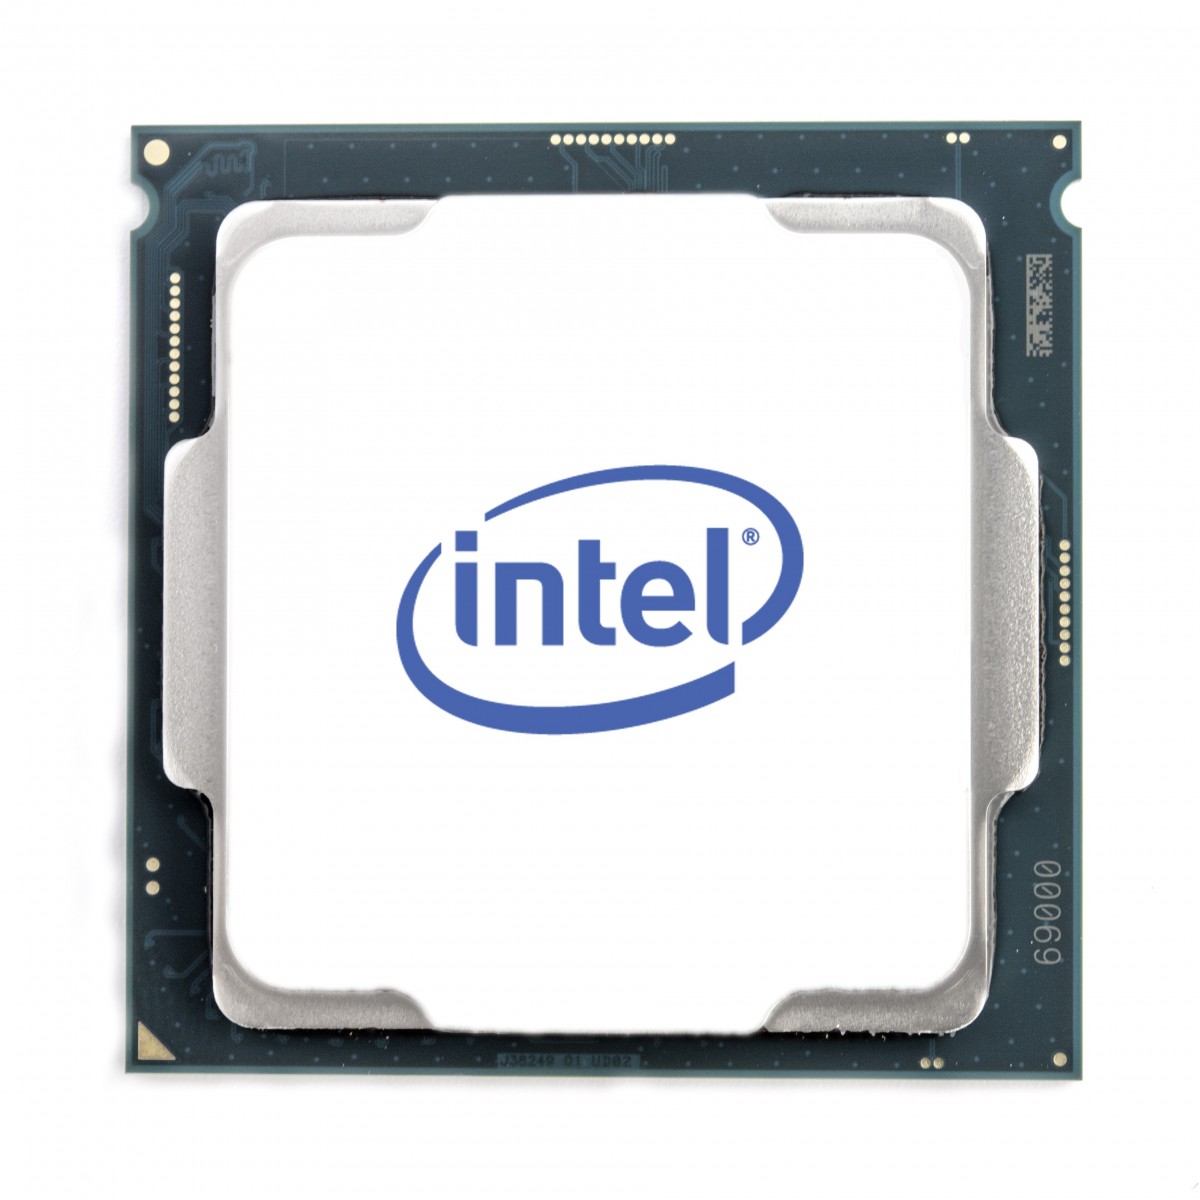 Fujitsu Intel Xeon Silver 4309Y 8C 2.80 GHz - Xeon Silber